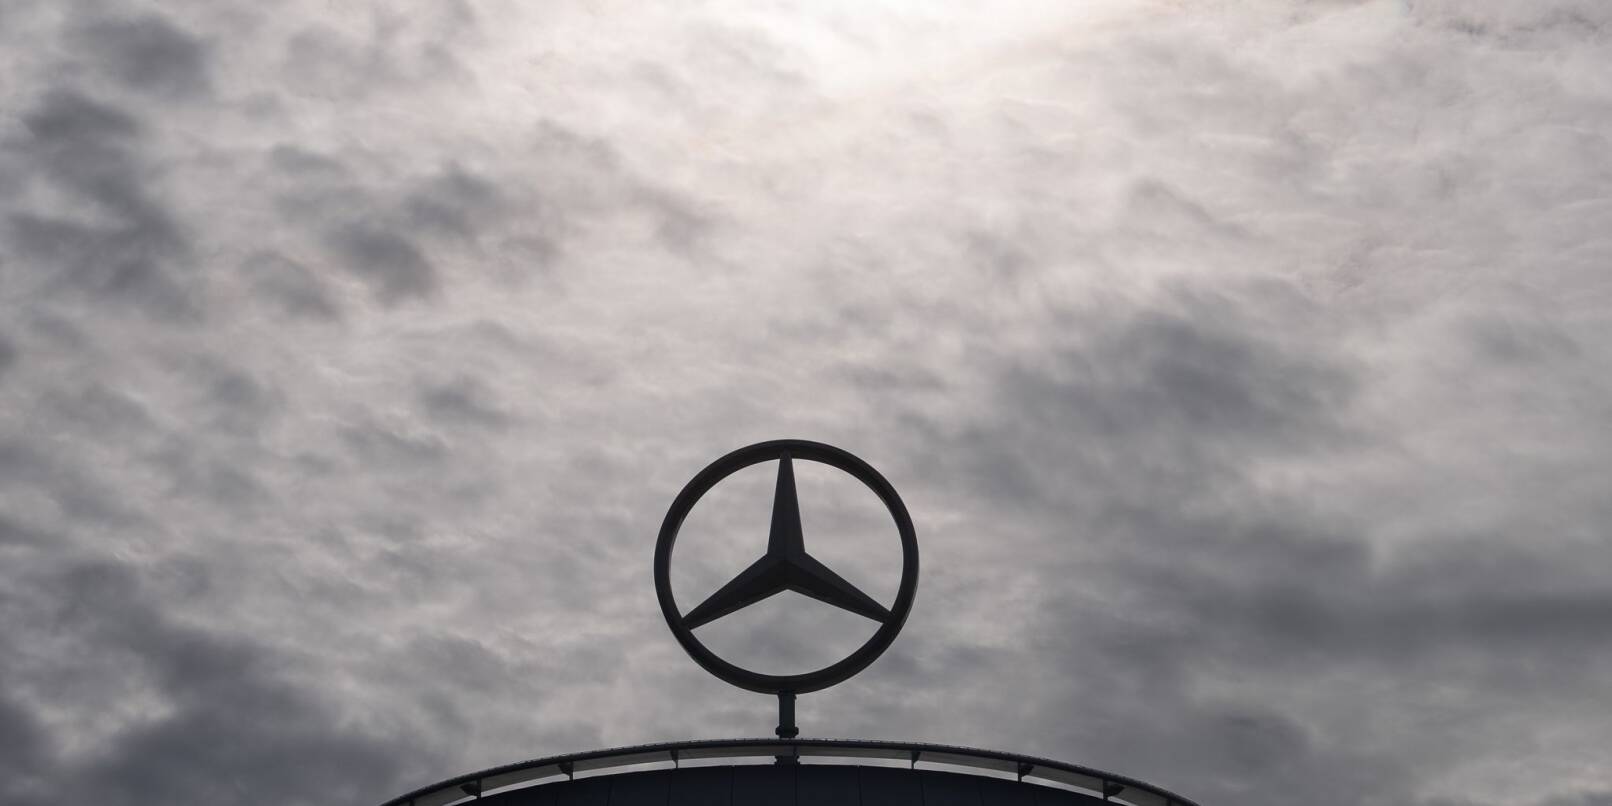 Ein Mercedes-Stern, das Logo der Marke Mercedes-Benz.